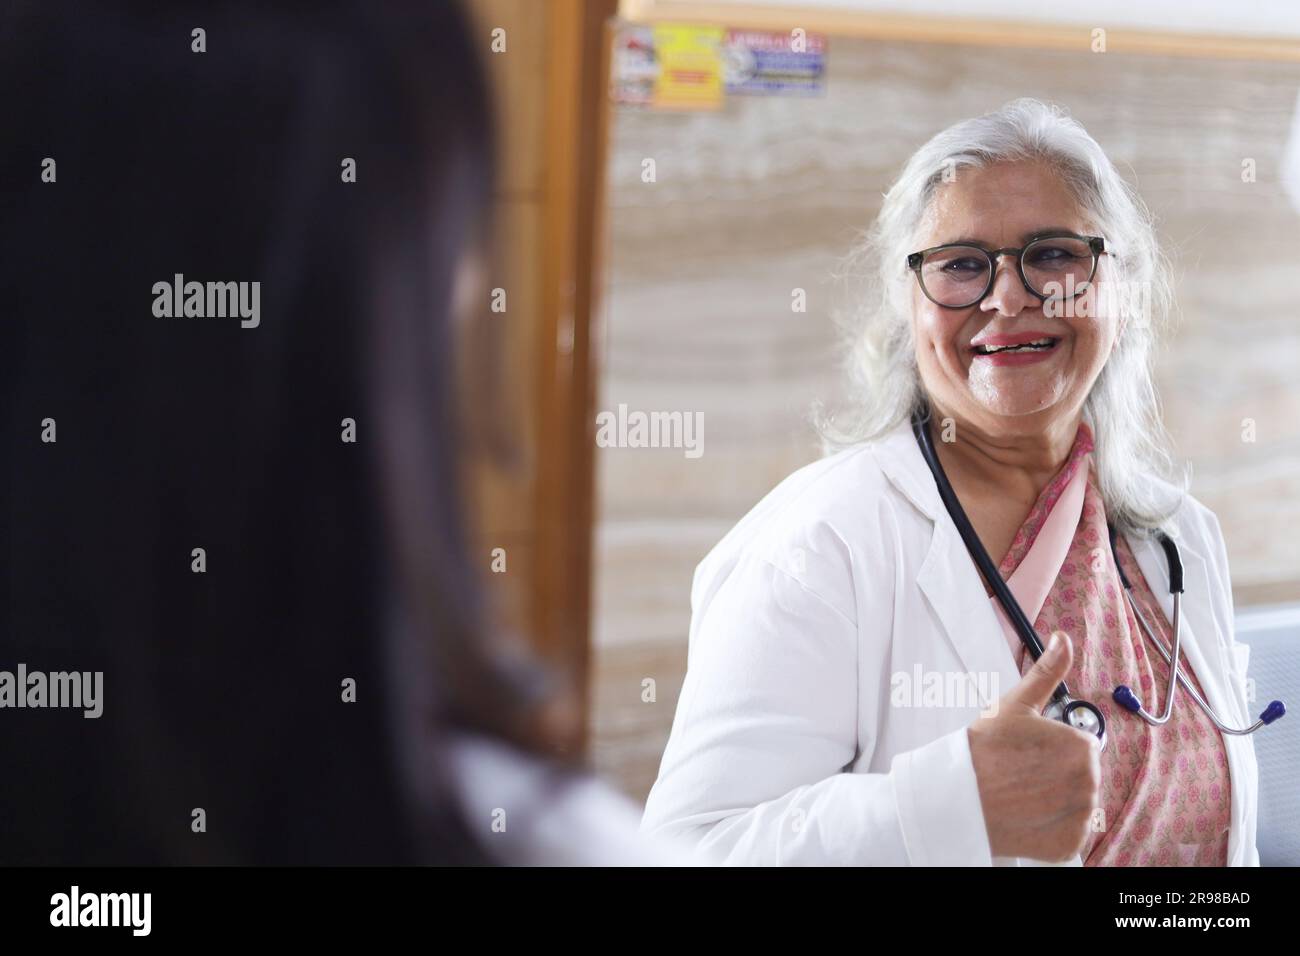 Médecin indien en discussion avec son assistant. Les médecins rient et parlent dans le couloir. Femme médecin âgée et jeune médecin. Médecin lisant le rapport du patient Banque D'Images